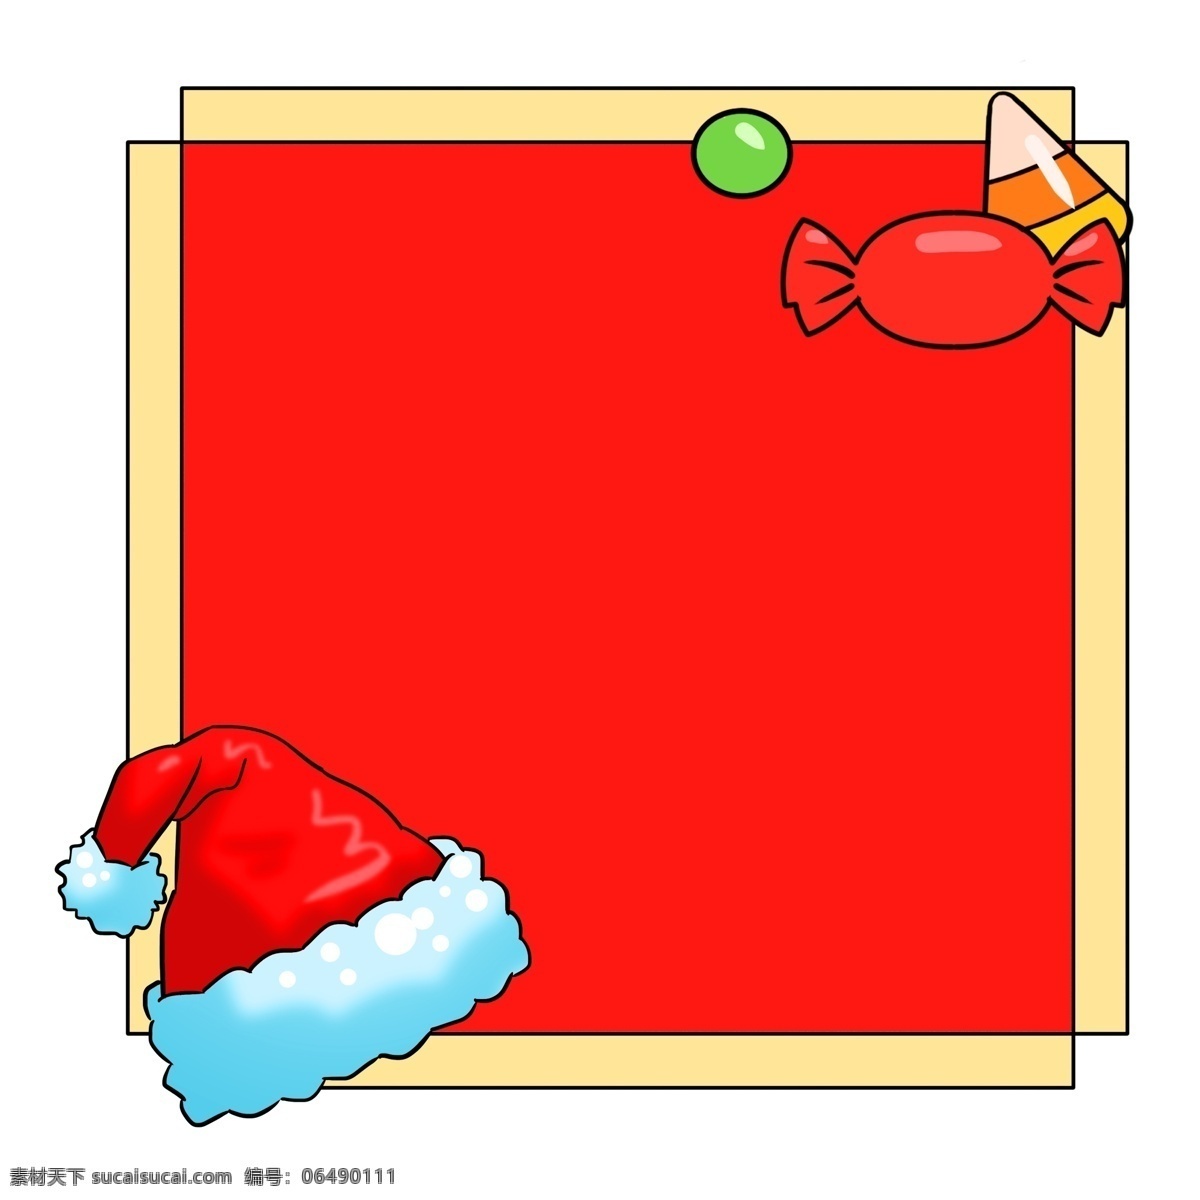 圣诞 红帽 糖块 礼物 边框 圣诞节边框 边框手绘 圣诞节礼物 一顶红帽边框 边框纹理 蓝边红帽 红黄边框 红色糖块